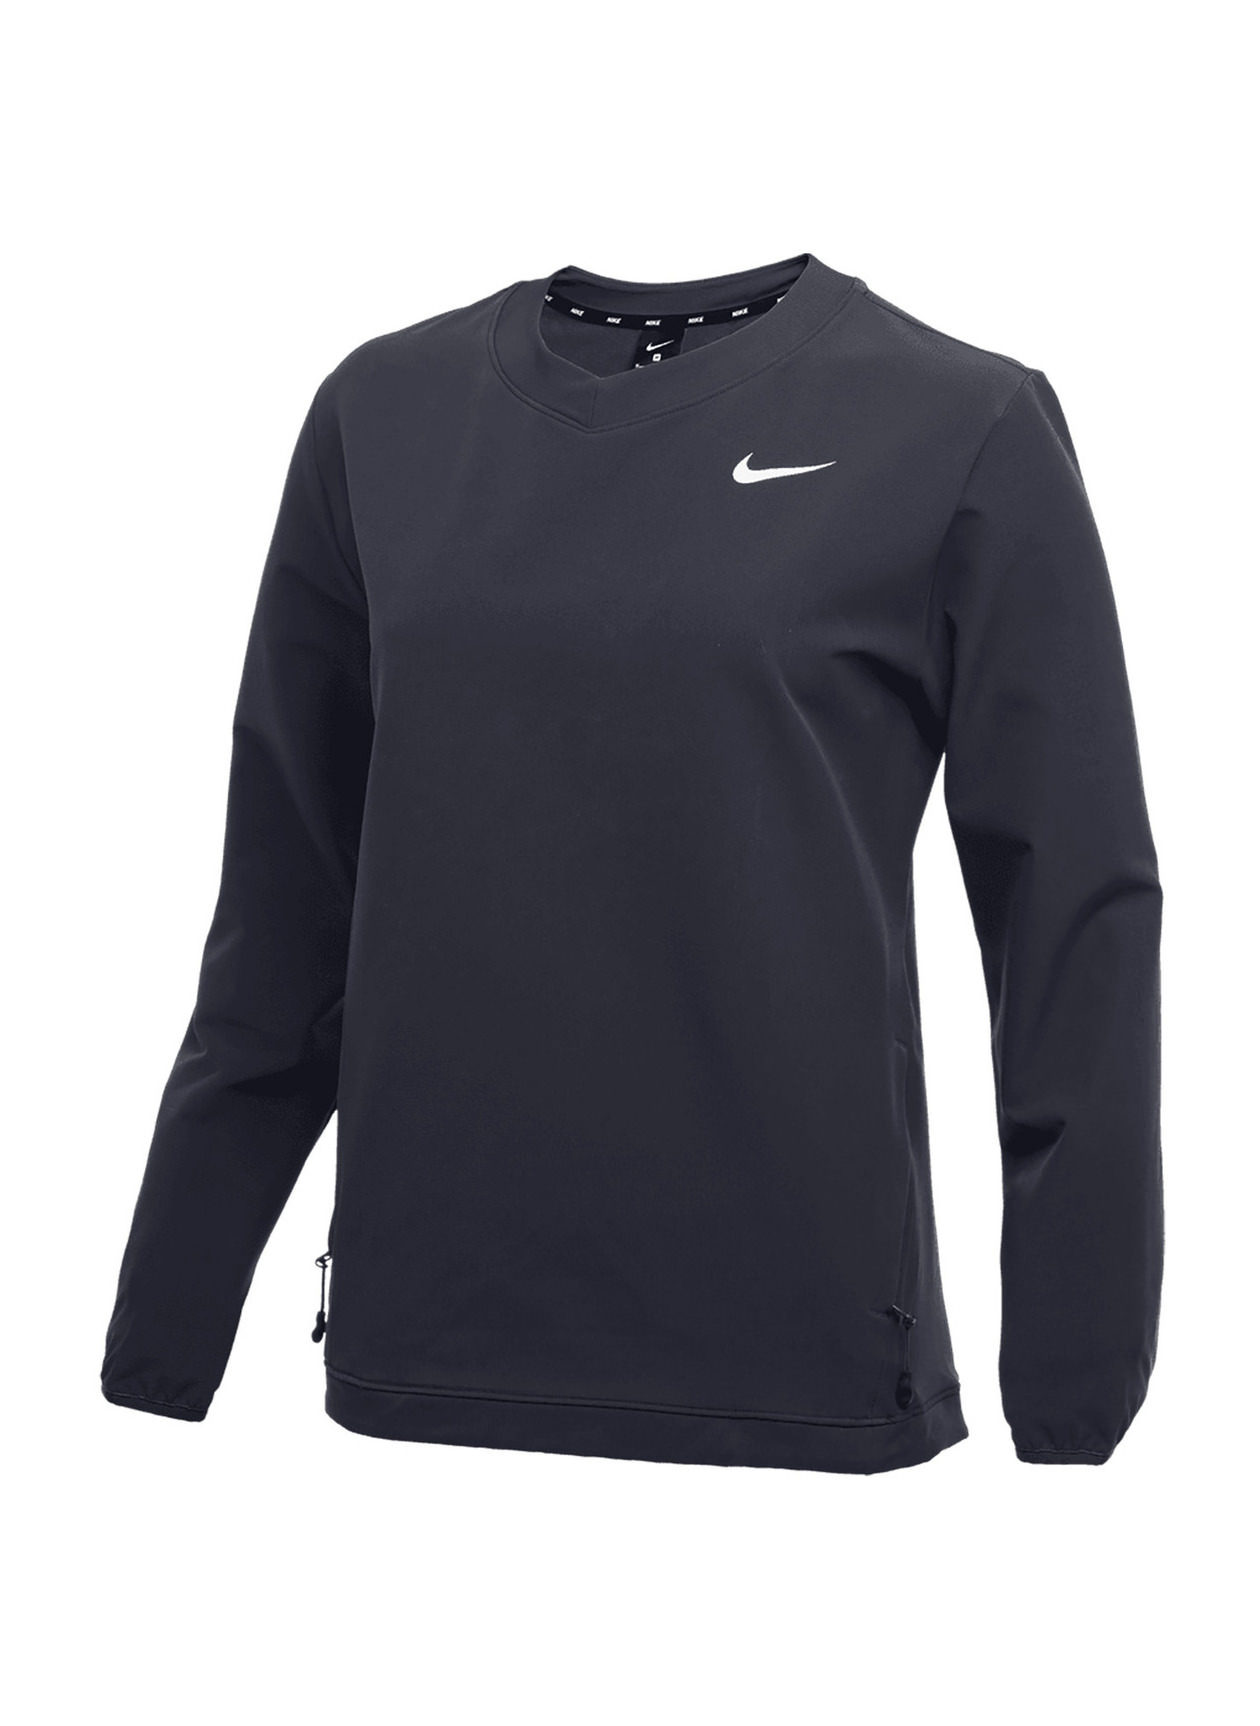 Nike Women's Team Anthracite / Team Black / White Long-Sleeve Softball  Pullover